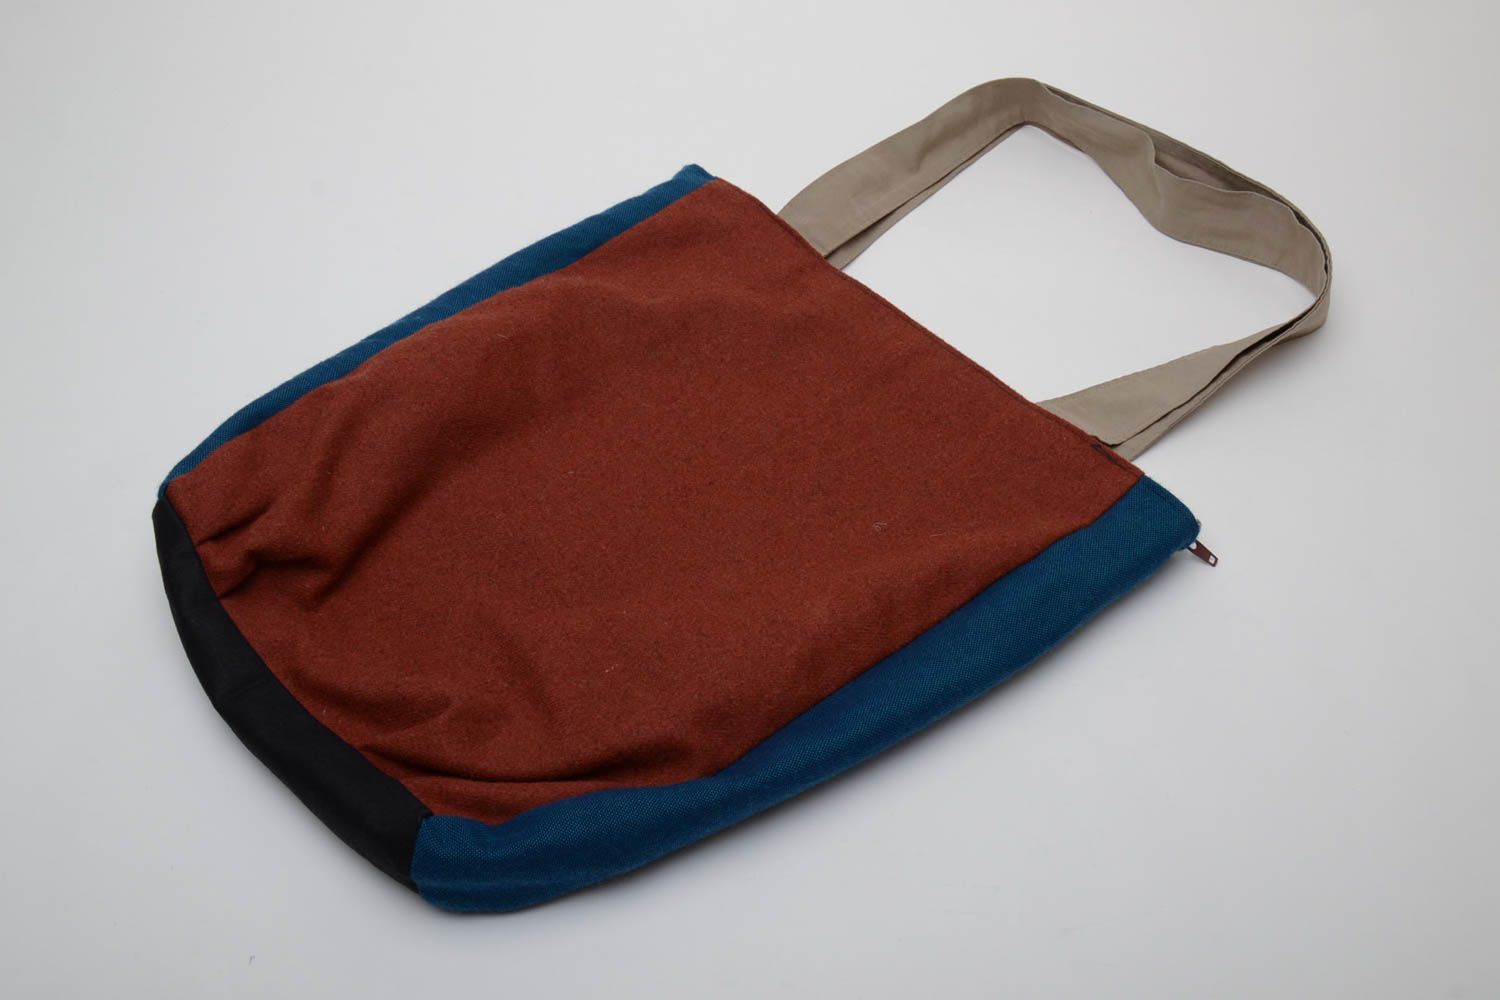 Textil Tasche in Braun foto 4